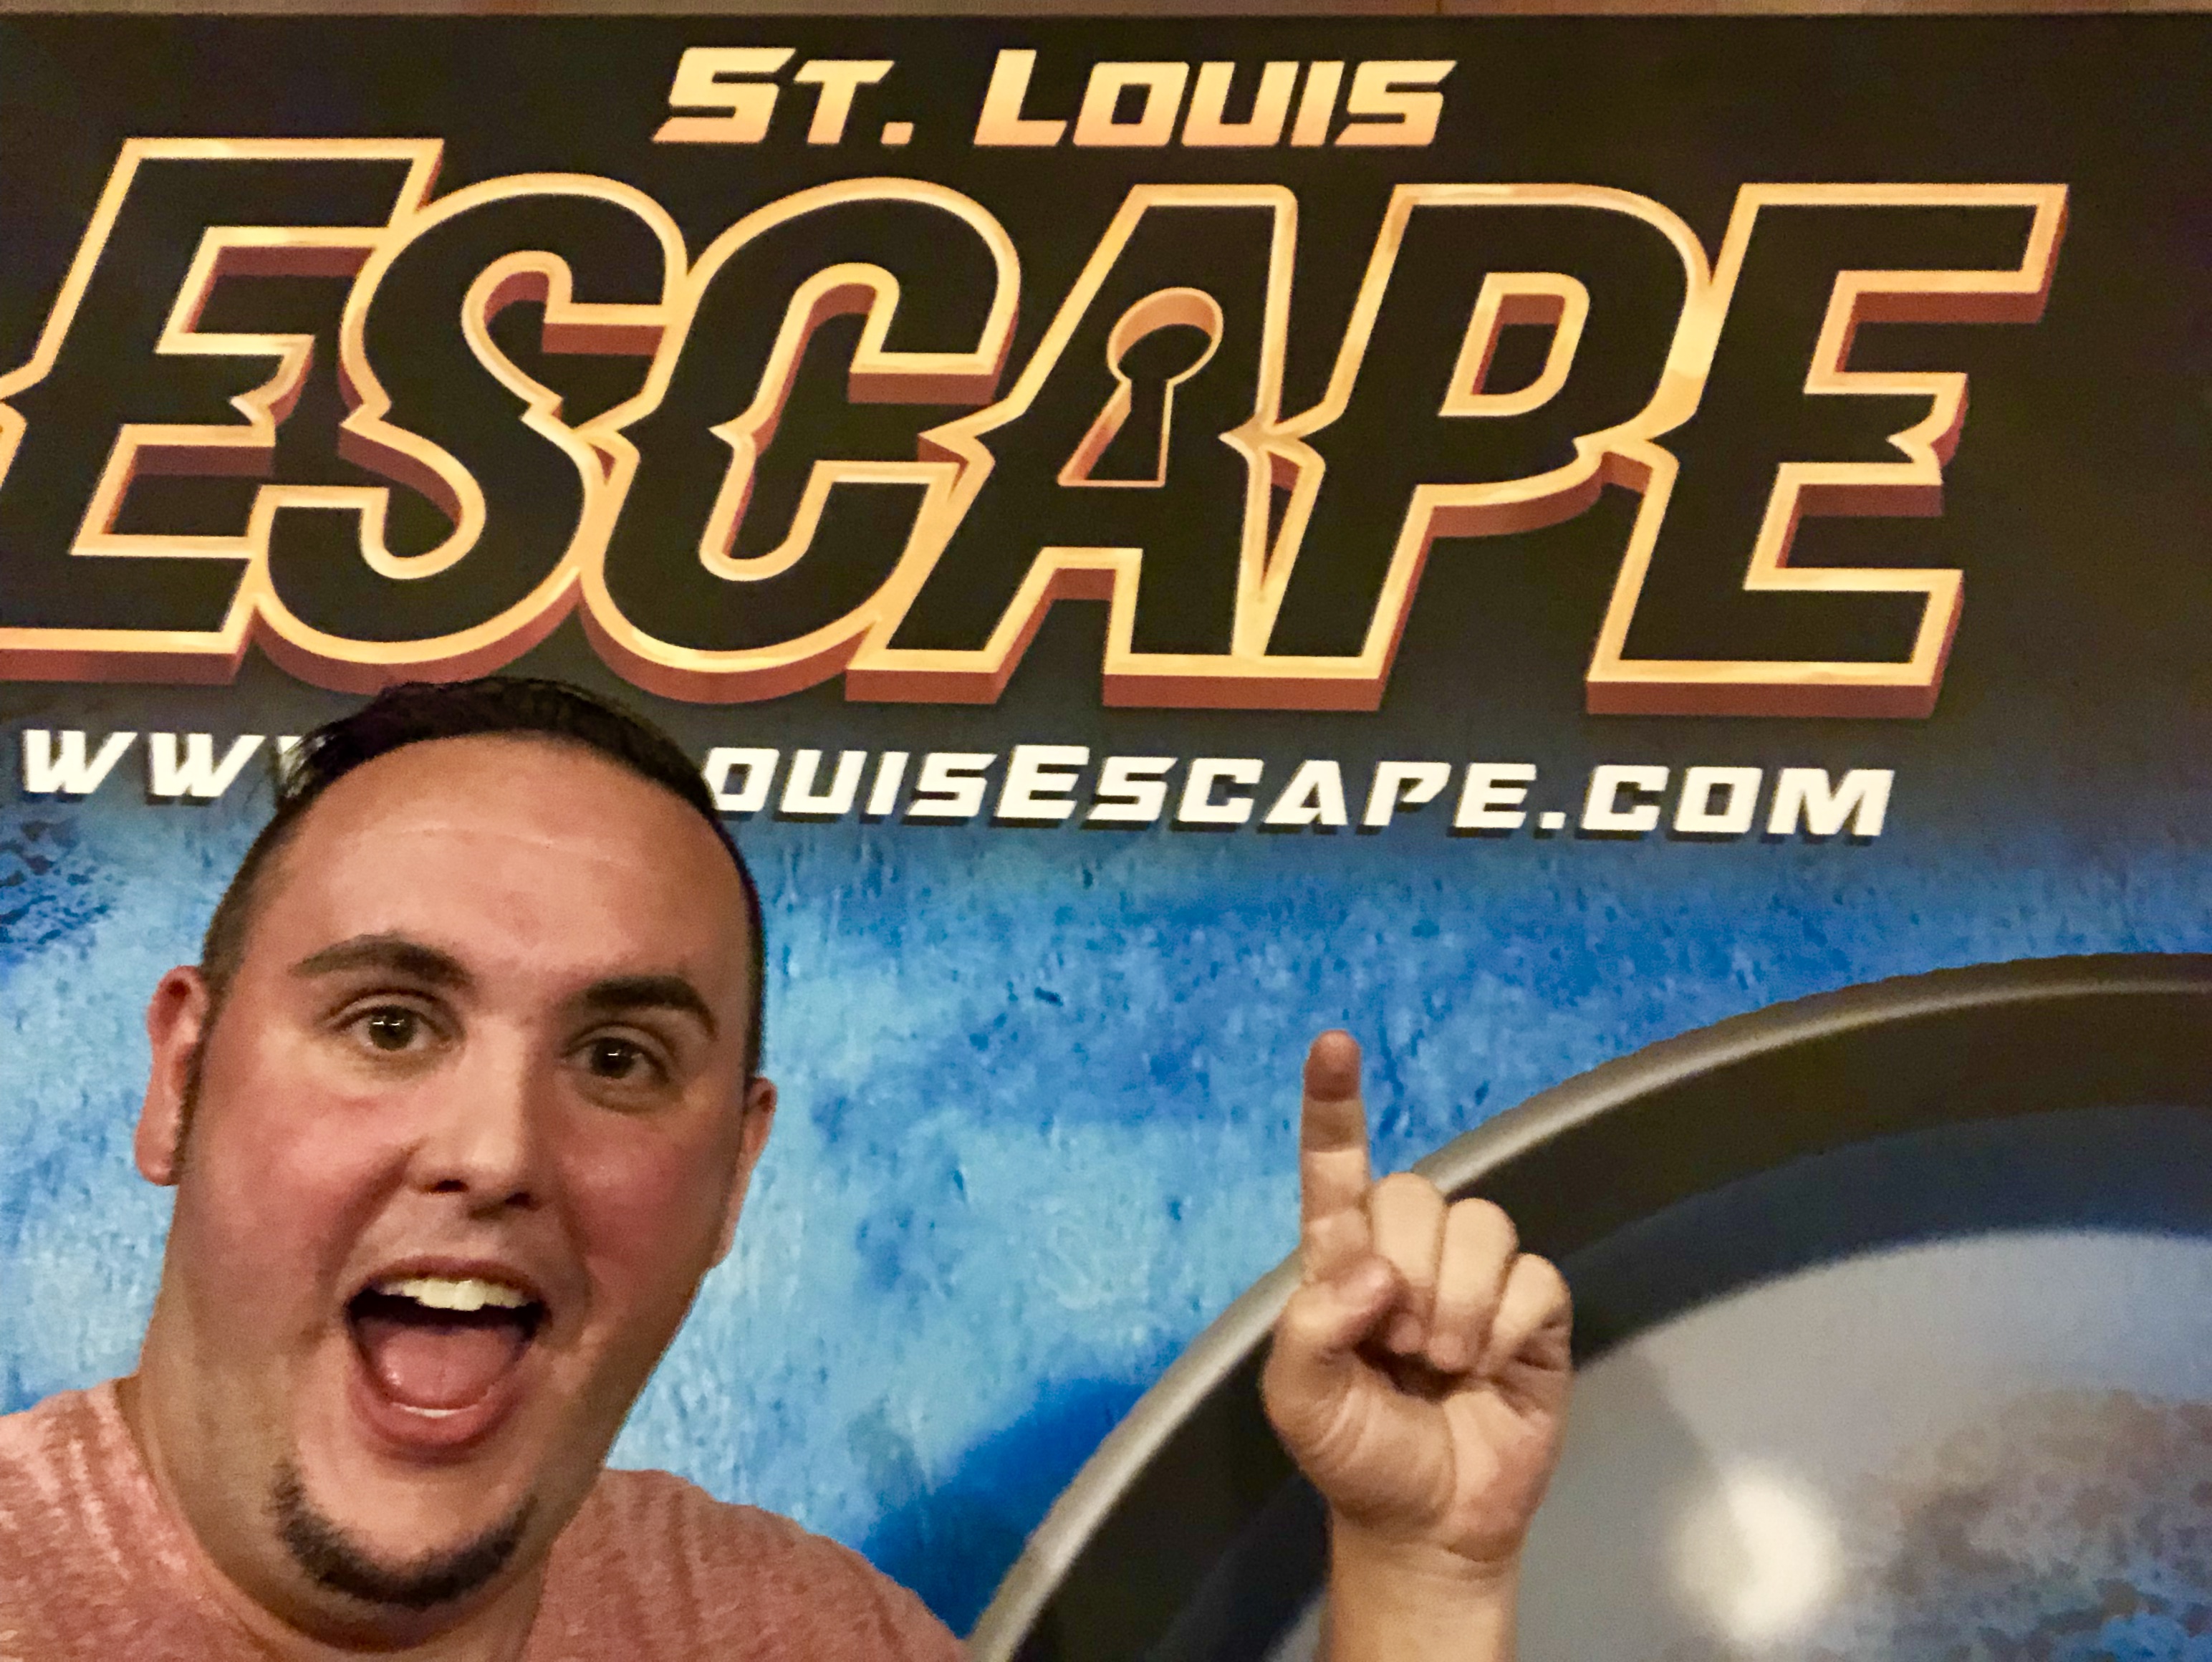 Review: St. Louis Escape - Haunted Hotel | St. Louis, MO